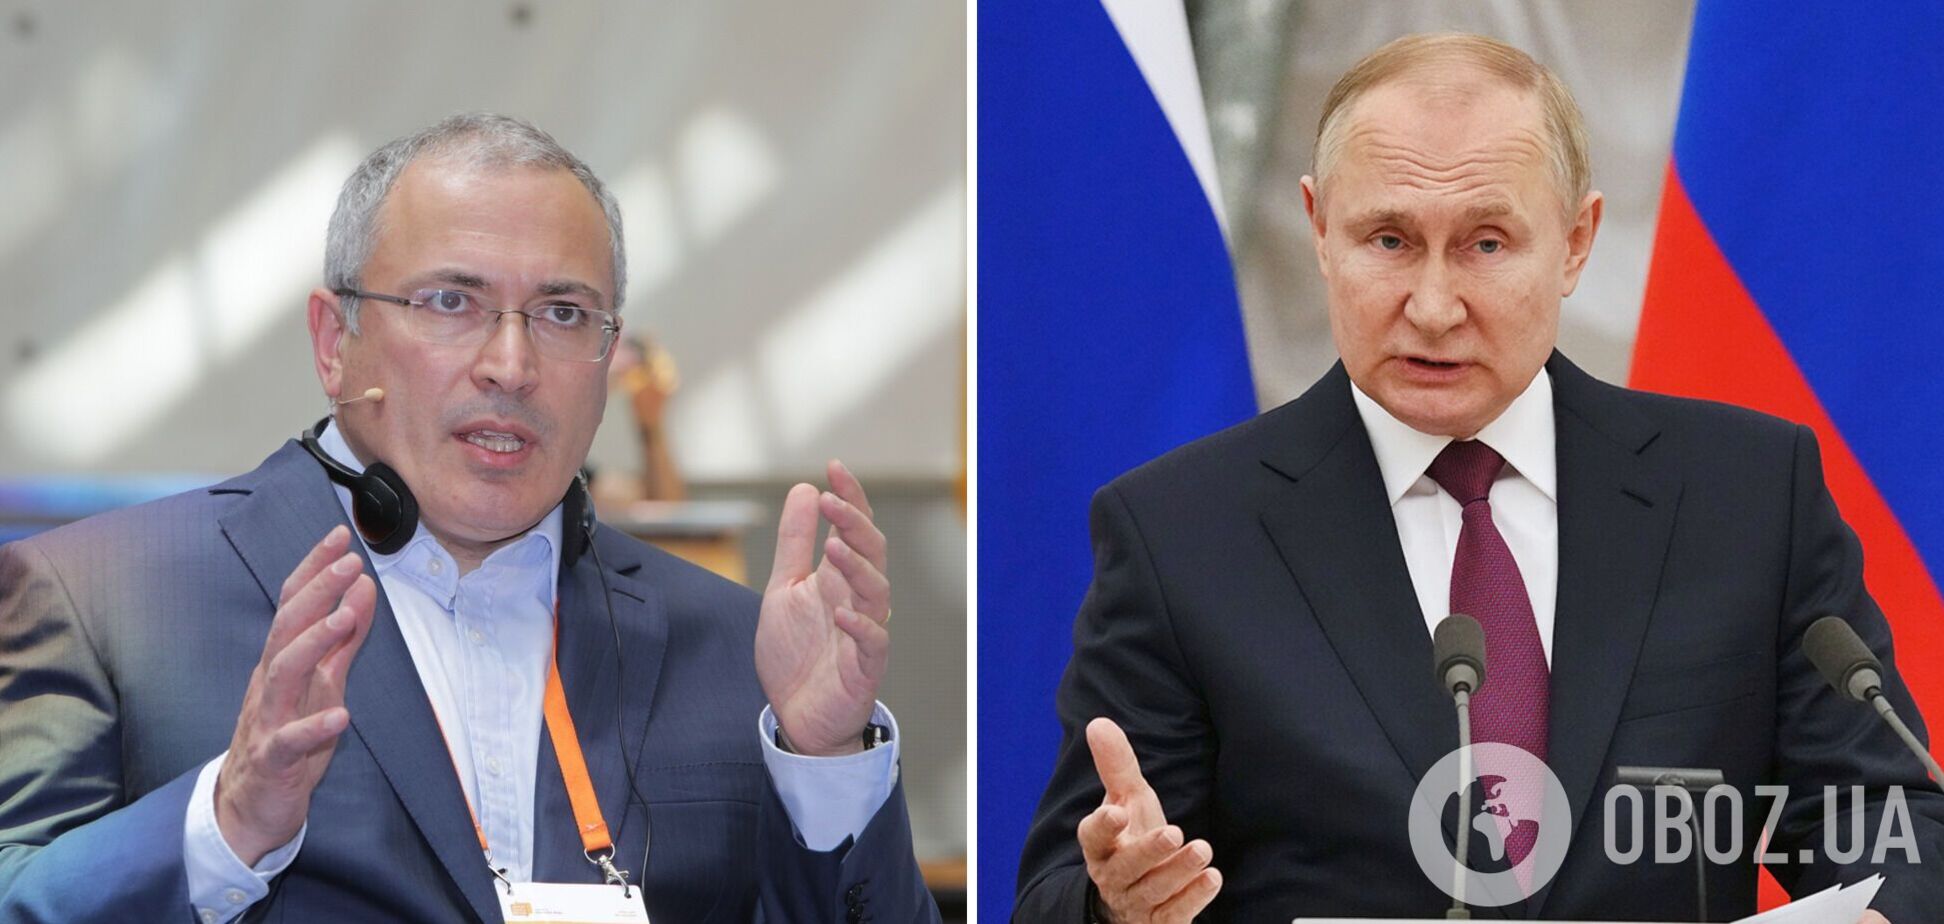 Ходорковский дал прогноз, сколько может длиться война и какой выбор придется сделать Путину. Видео